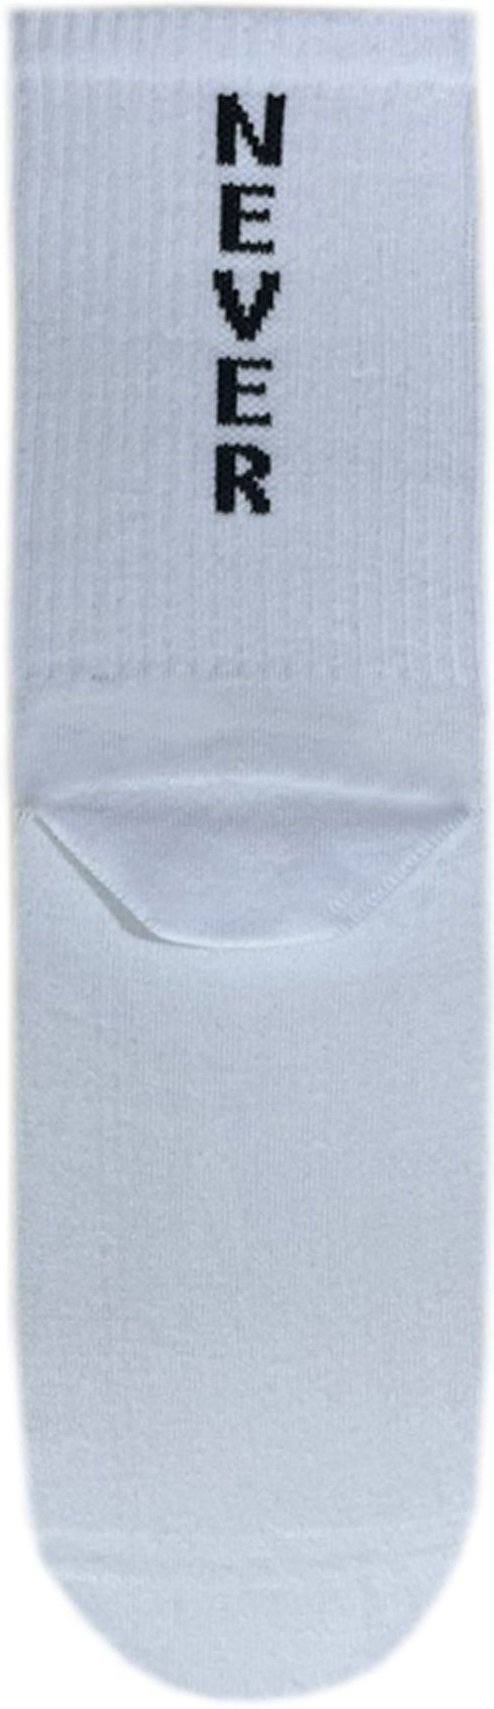 Шкарпетки чоловічі Premier Socks 40-41 1 пара білі з принтом (4820163317915)фото2